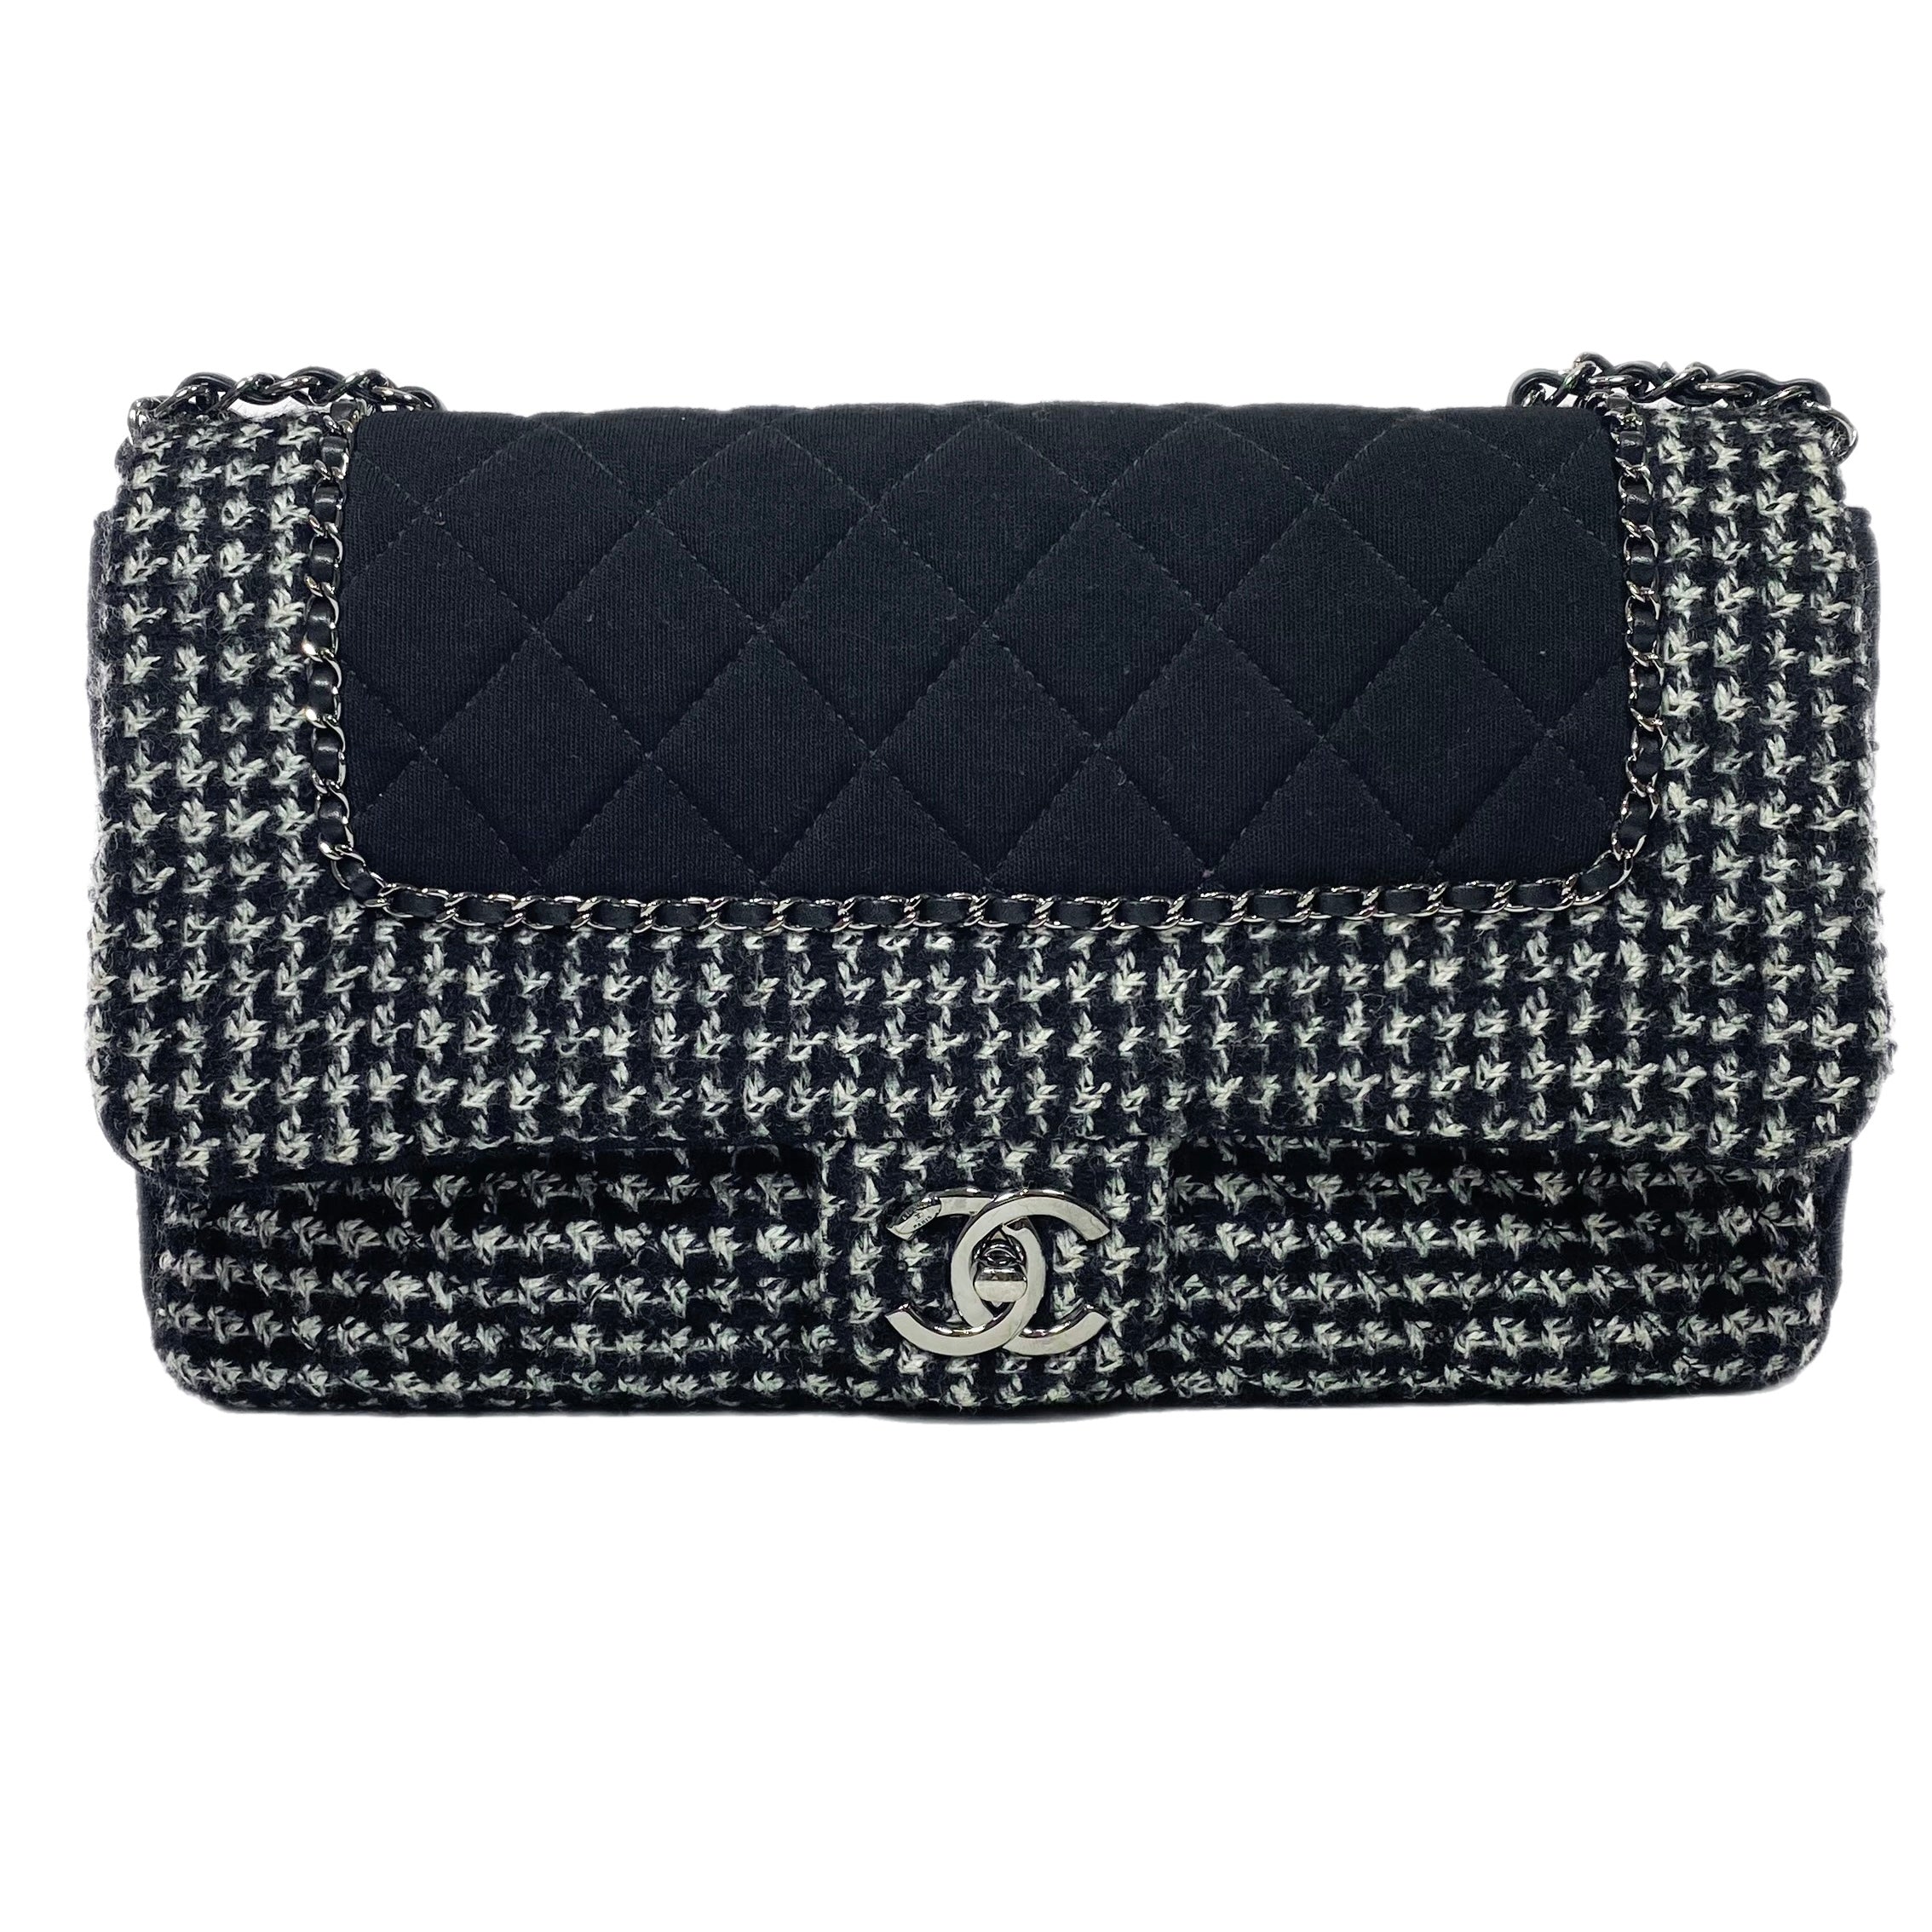 Chanel Tweed Maxi 19 Flap Bag - Black Shoulder Bags, Handbags - CHA950127